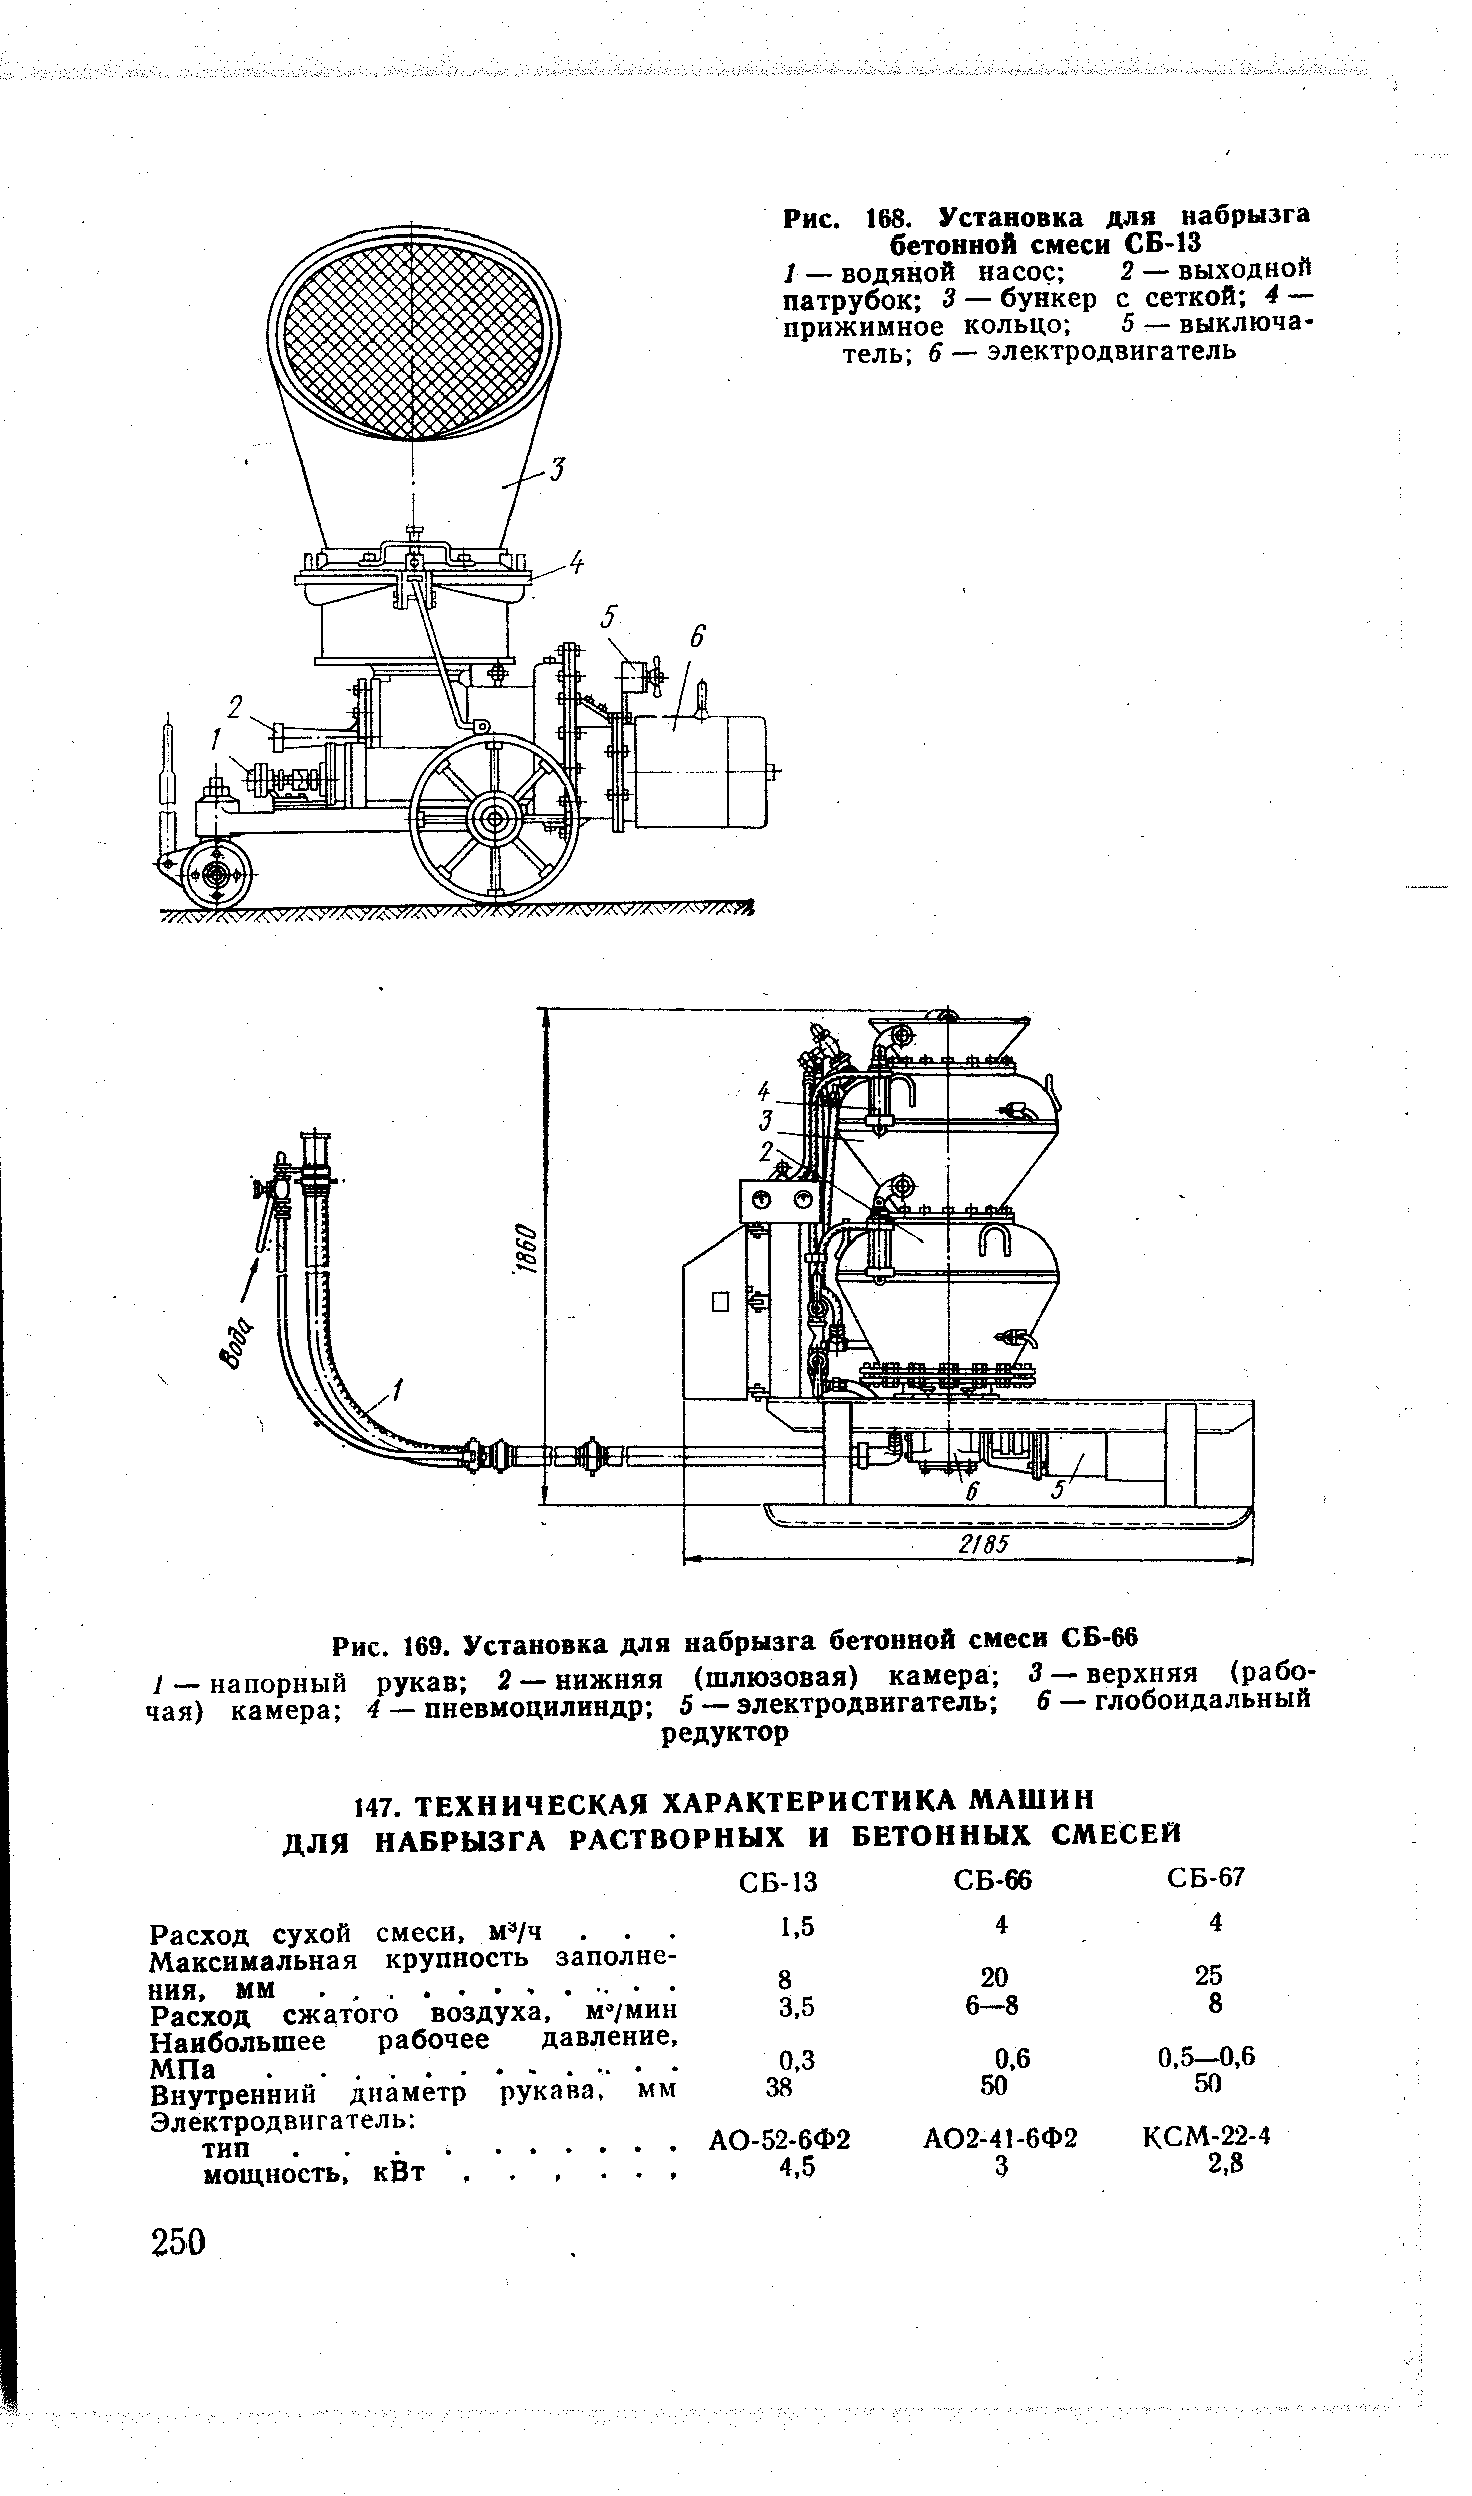 Рис. 168. Установка для набрызга бетонной смеси СБ-13
